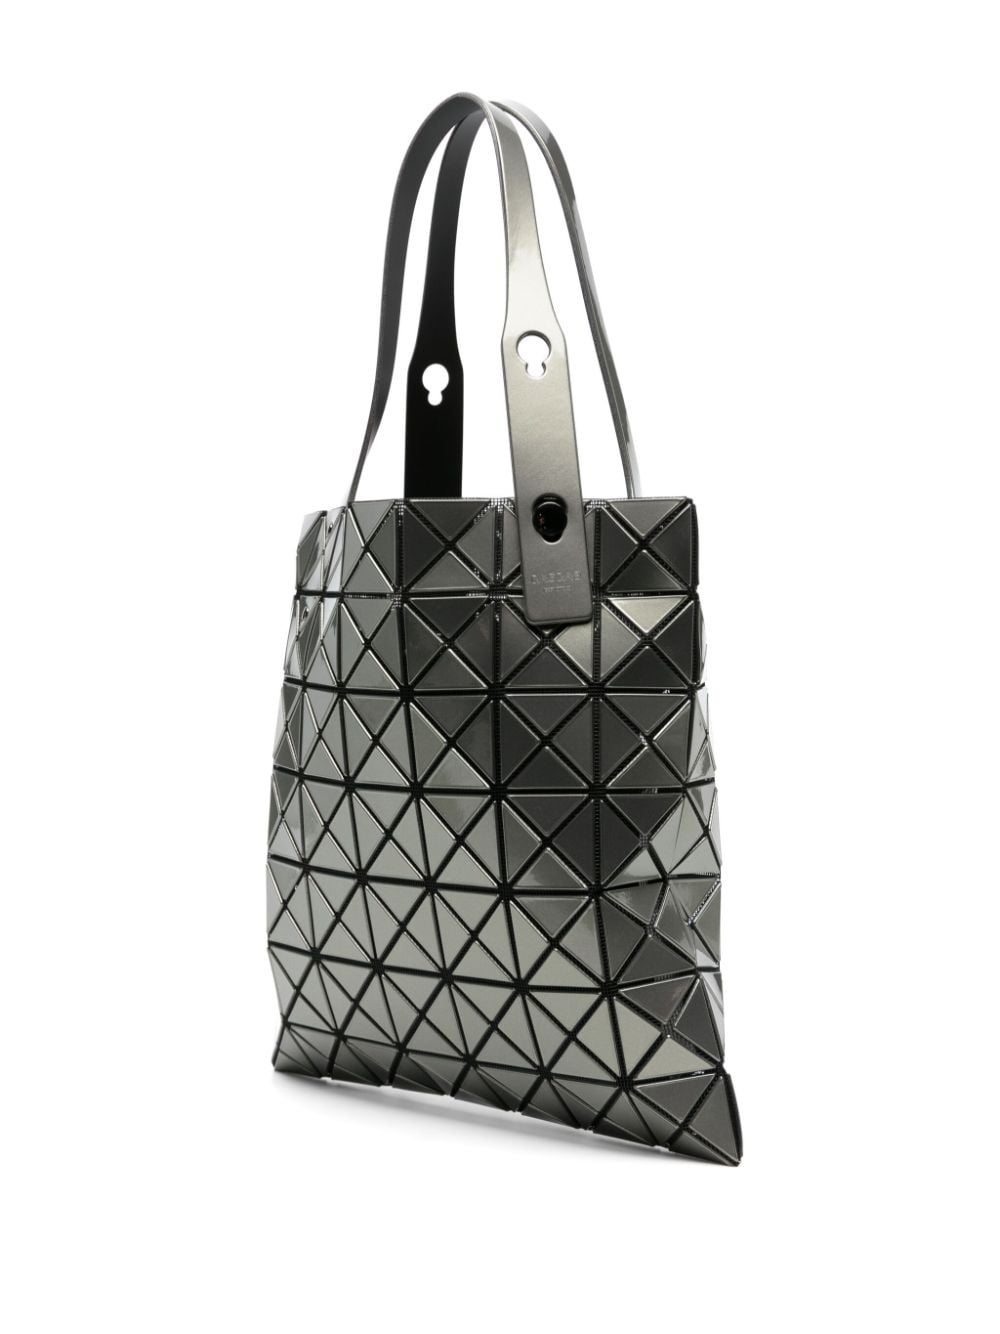  BAOBAO ISSEY MIYAKE- Prism Metallic Geometric-panel Tote Bag